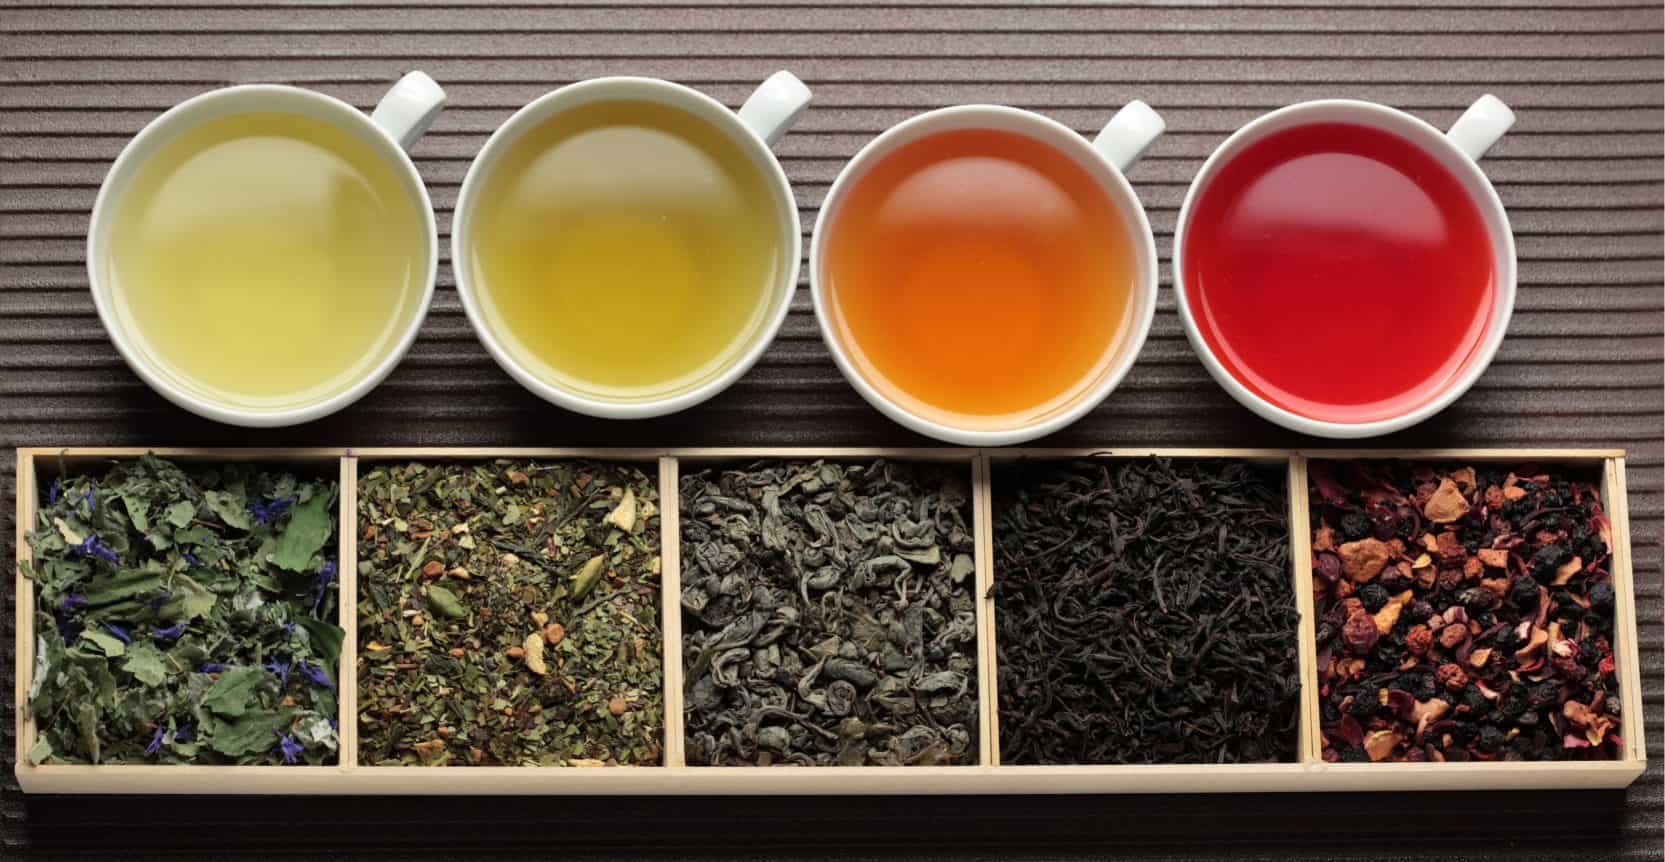 آشنایی با انواع چای | انواع چای | چای مهرآیین | محصولات مهرآیین | مهرآیین | شرکت مهرآیین | چای شکسته | چای بهاره | چای سیاه | چای لاهیجان